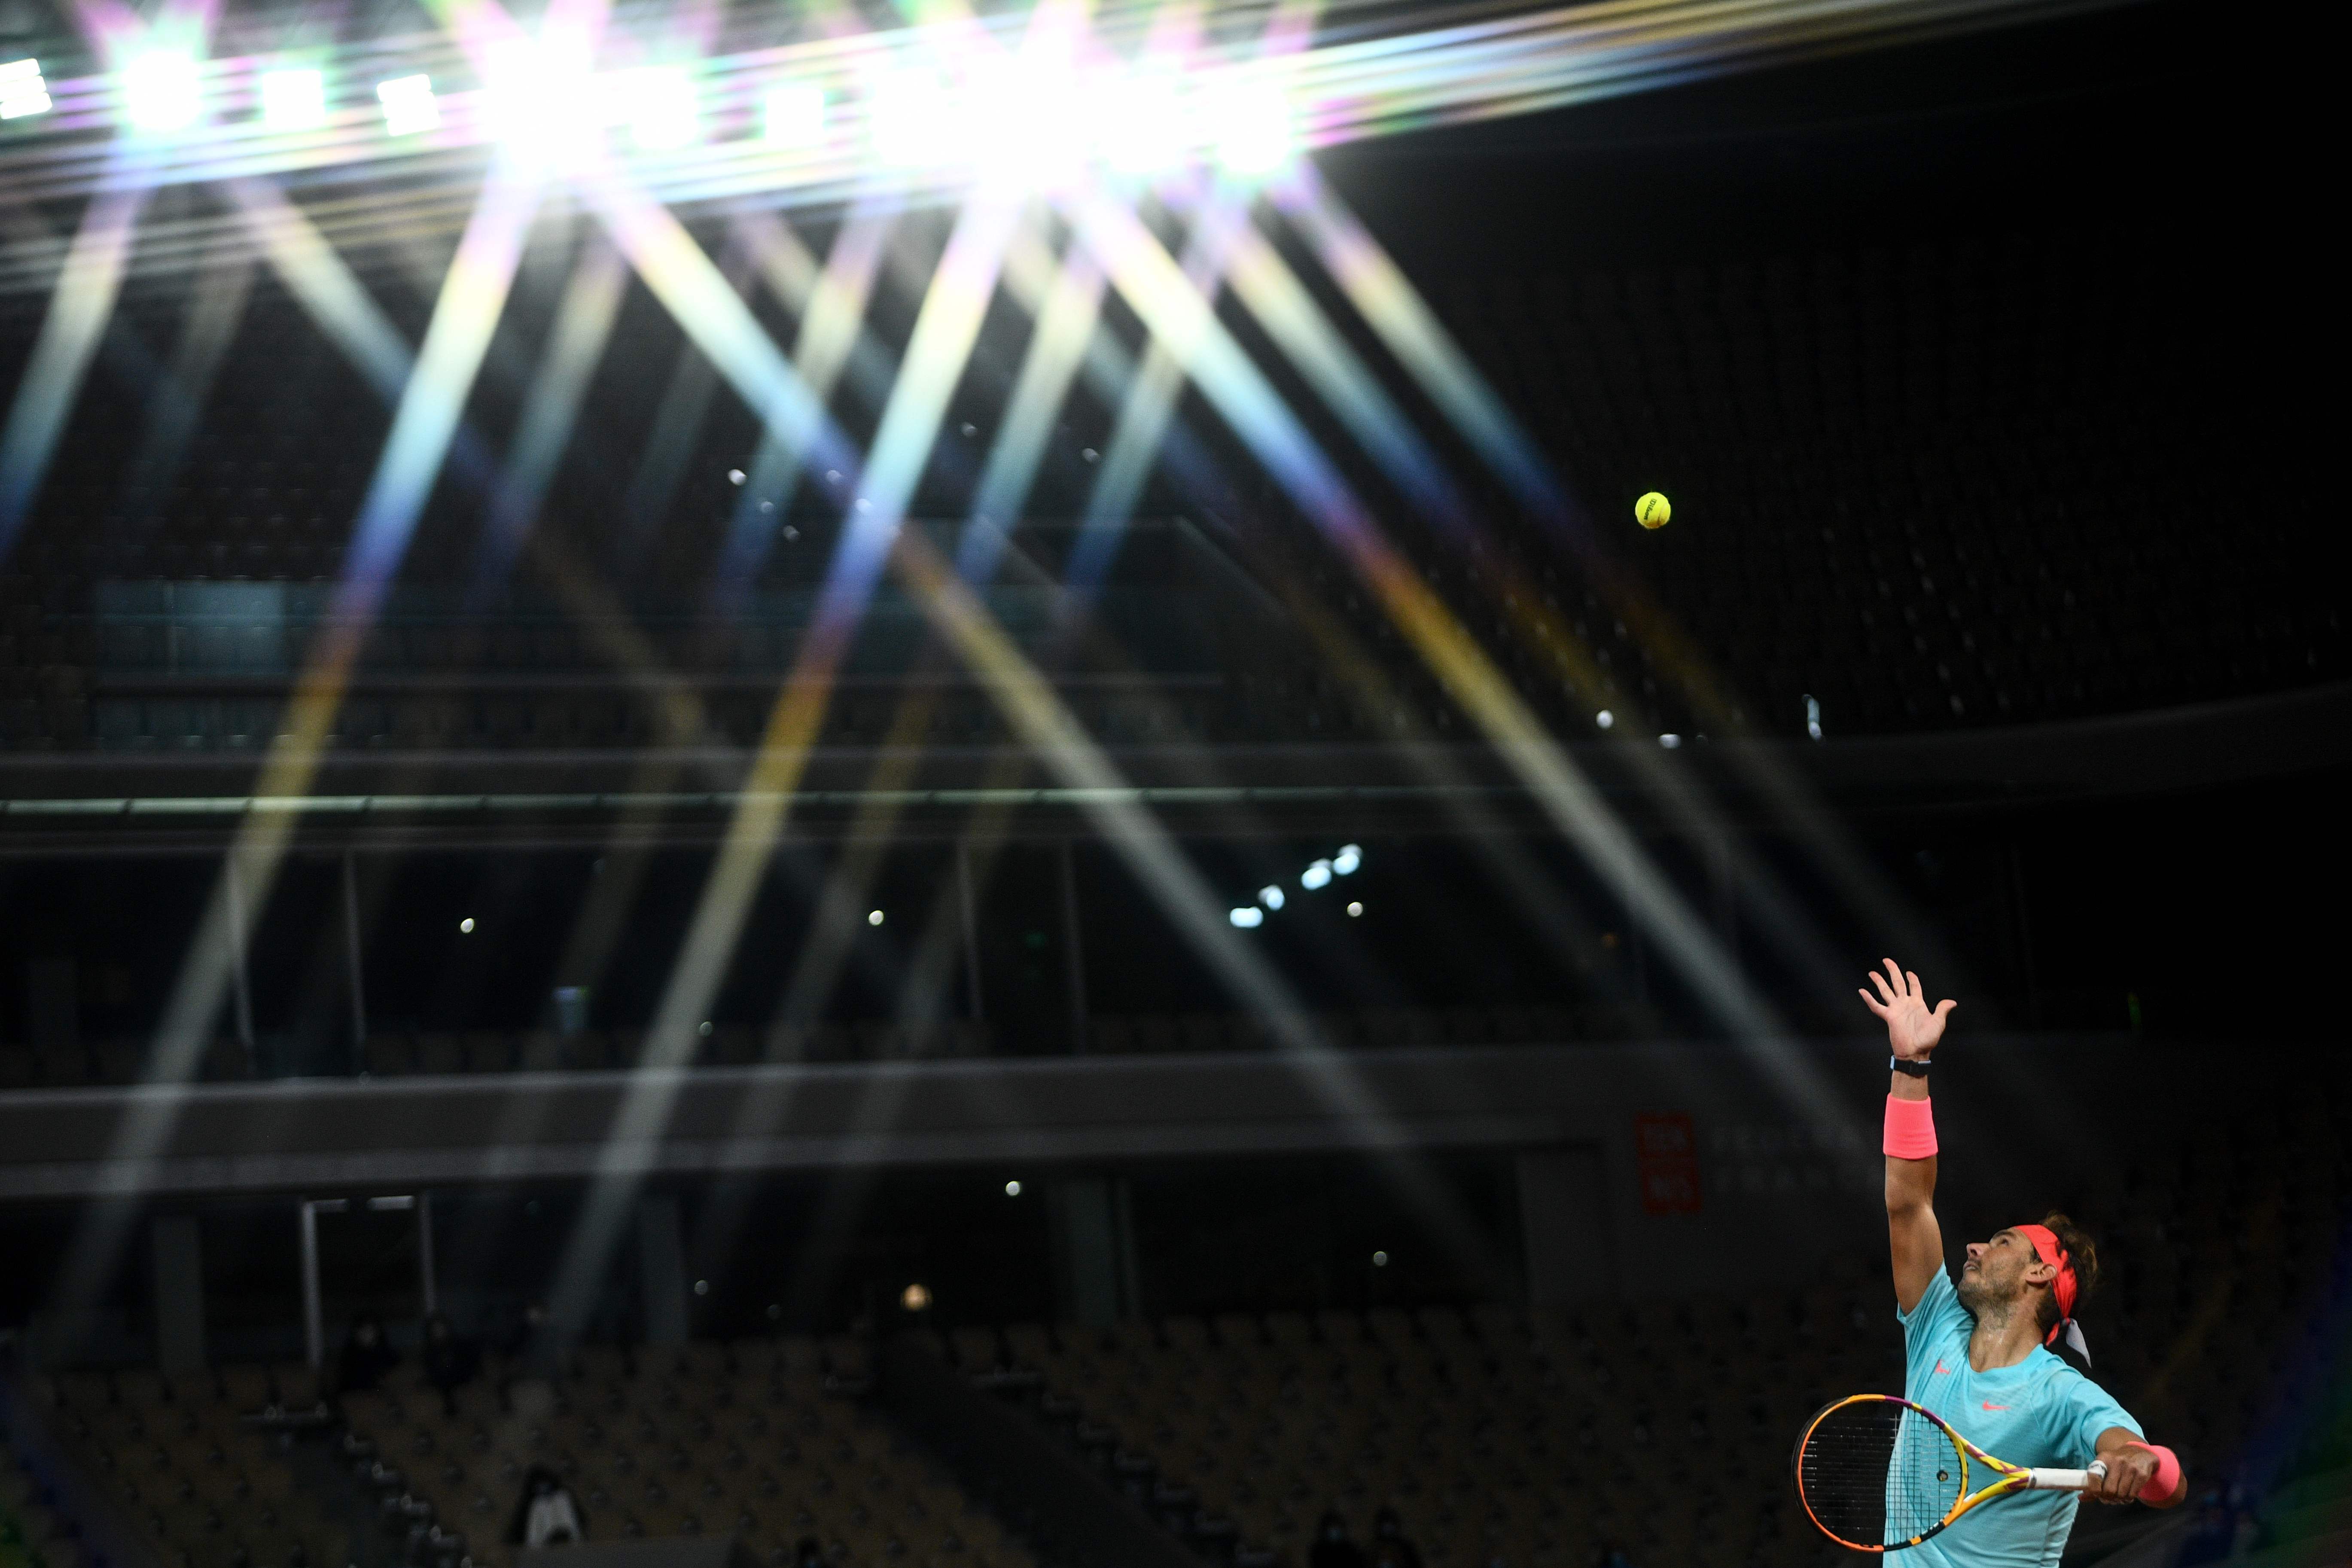 Pelotazo, susto y felicidad para Djokovic | Deportes